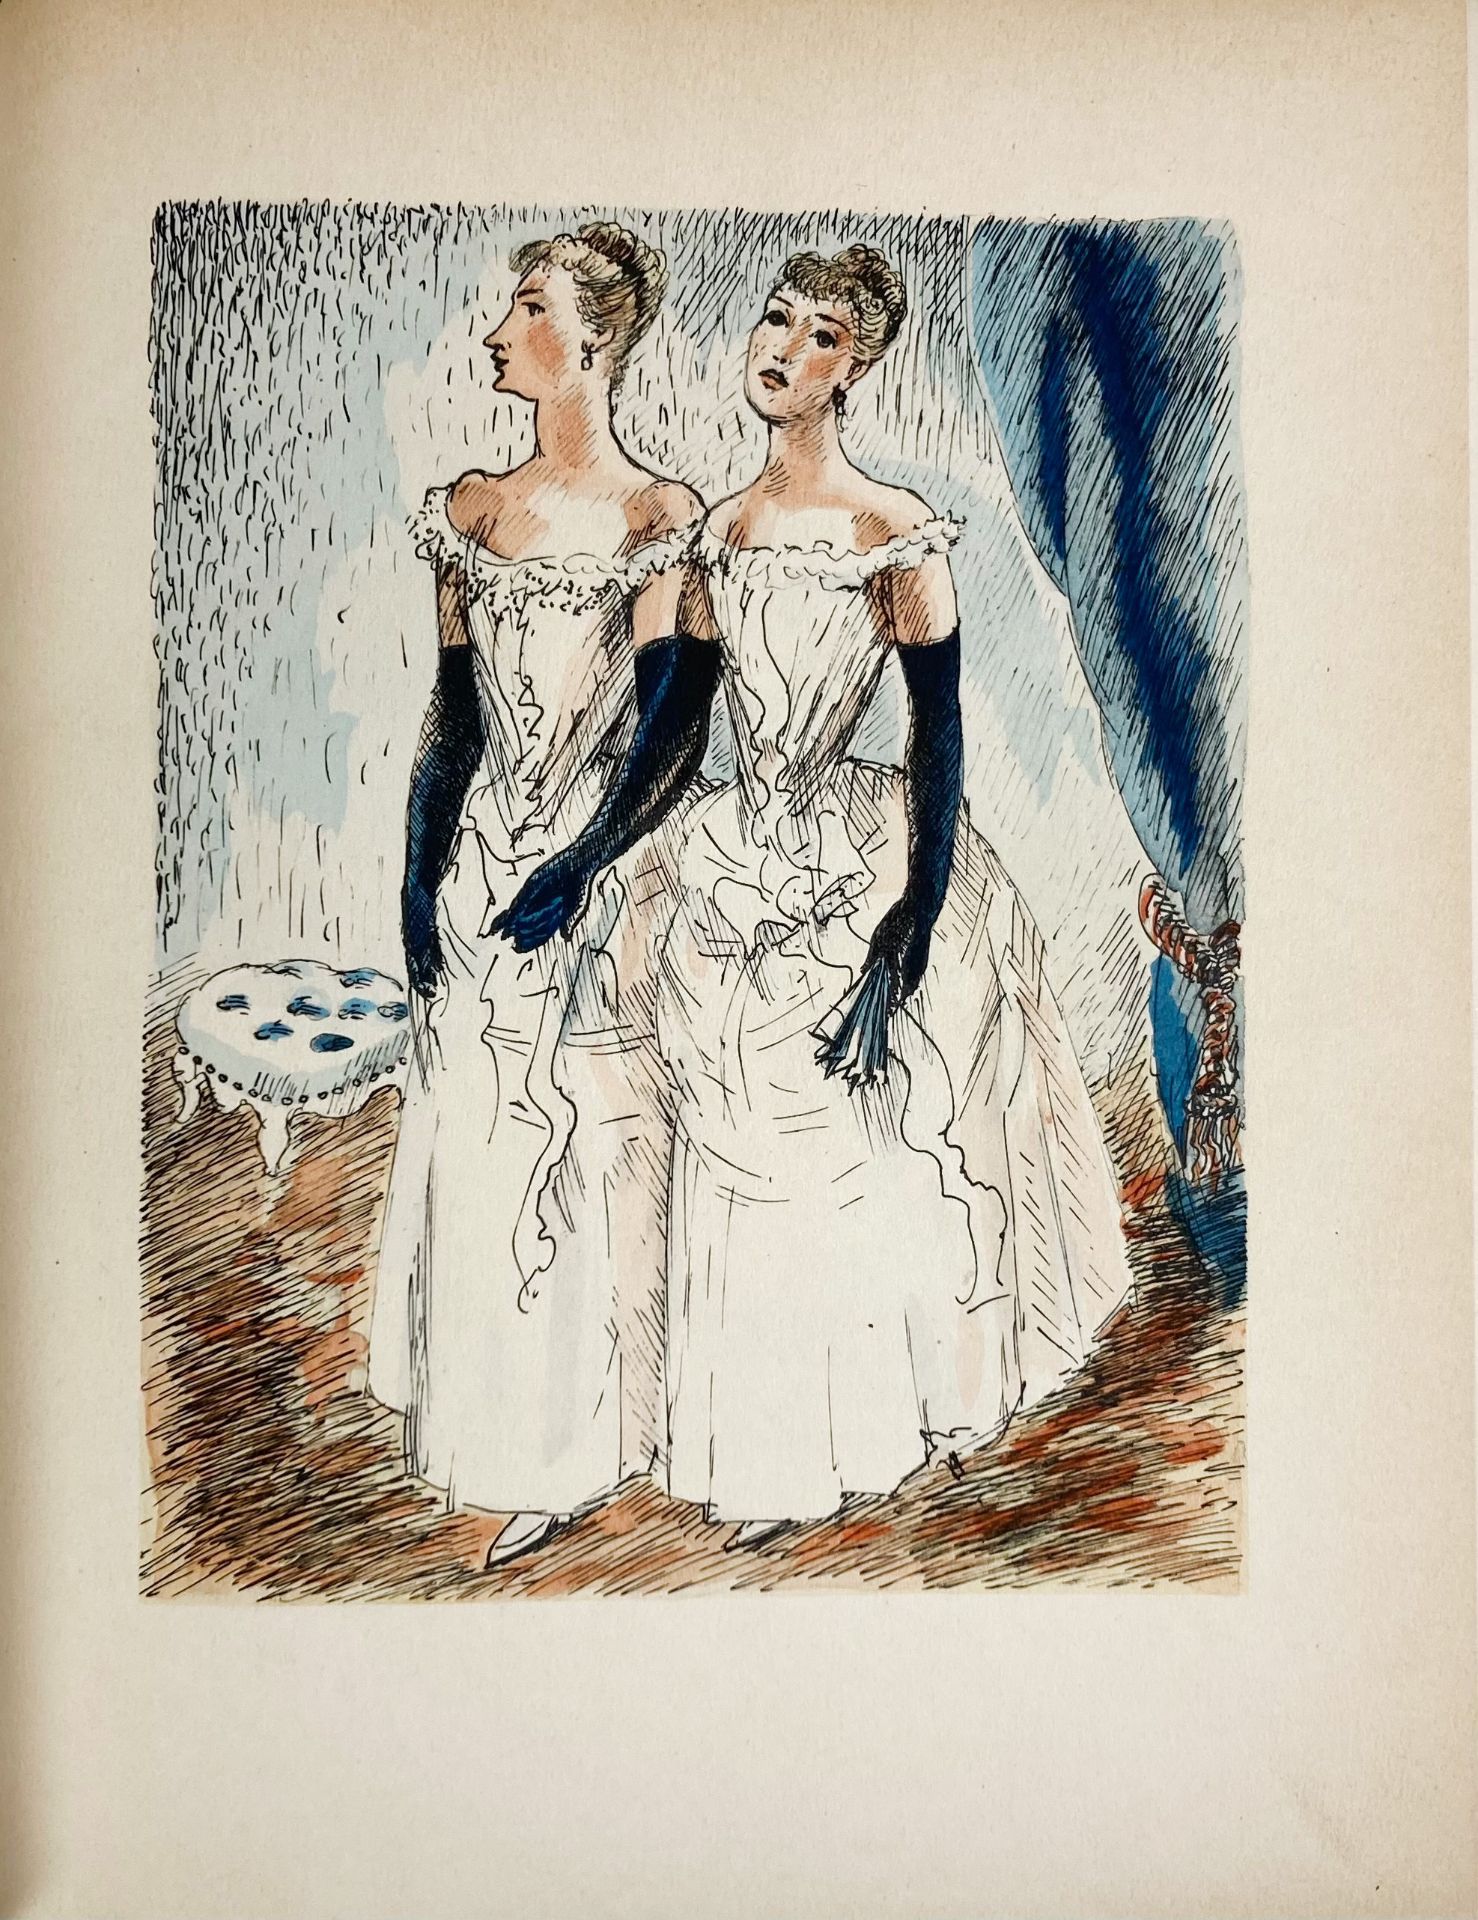 MAUPASSANT, G. de. Oeuvres complètes illustrées. Paris, Librairie de France, 1934-38. 15 - Image 2 of 2